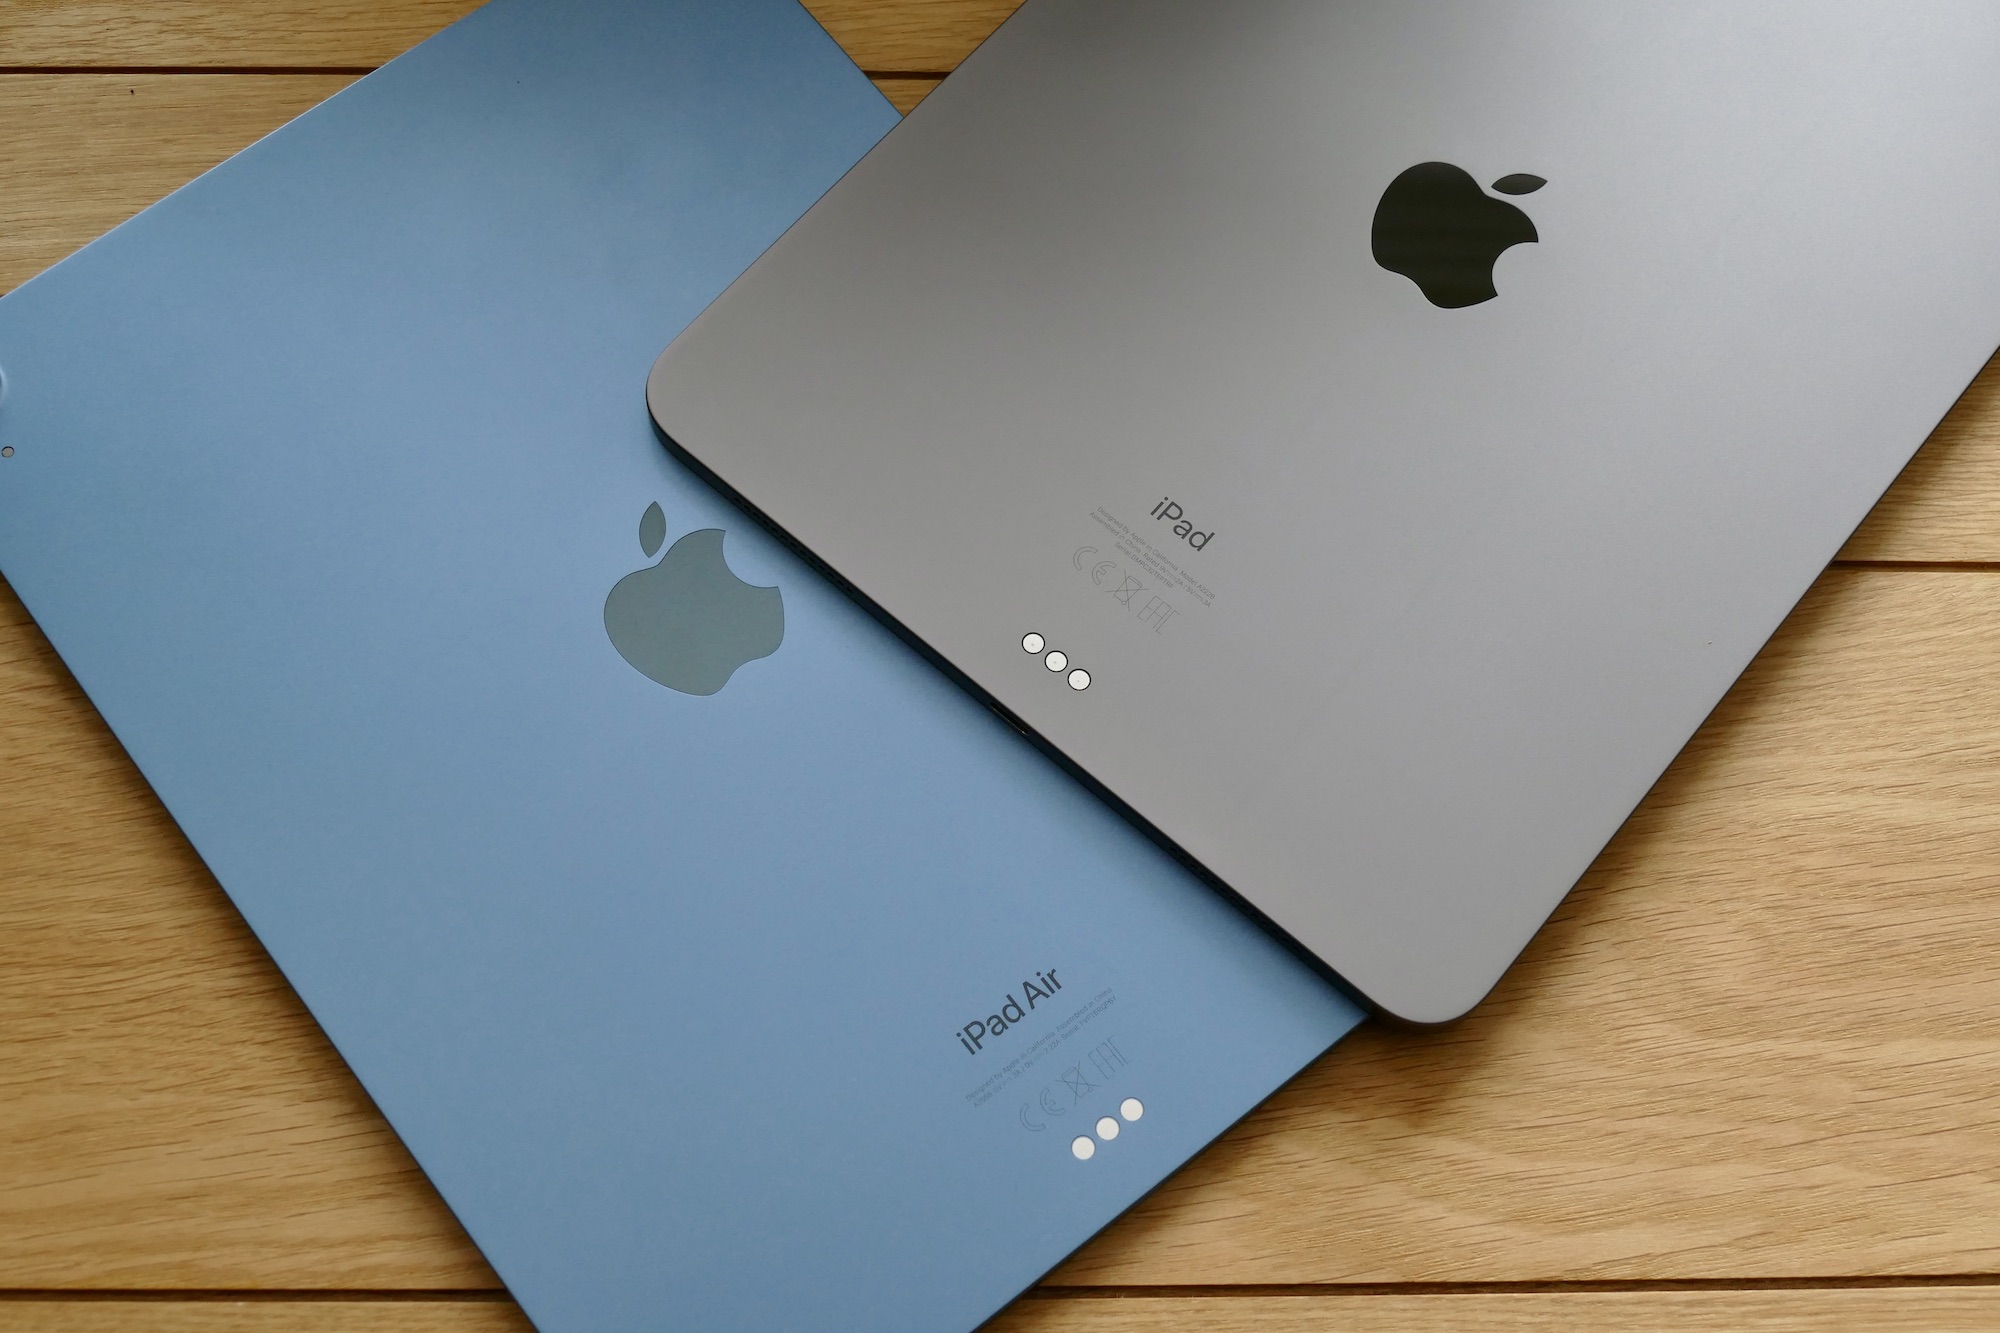 Retro di iPad Air e iPad Pro di Apple, con i tablet posizionati su un tavolo.